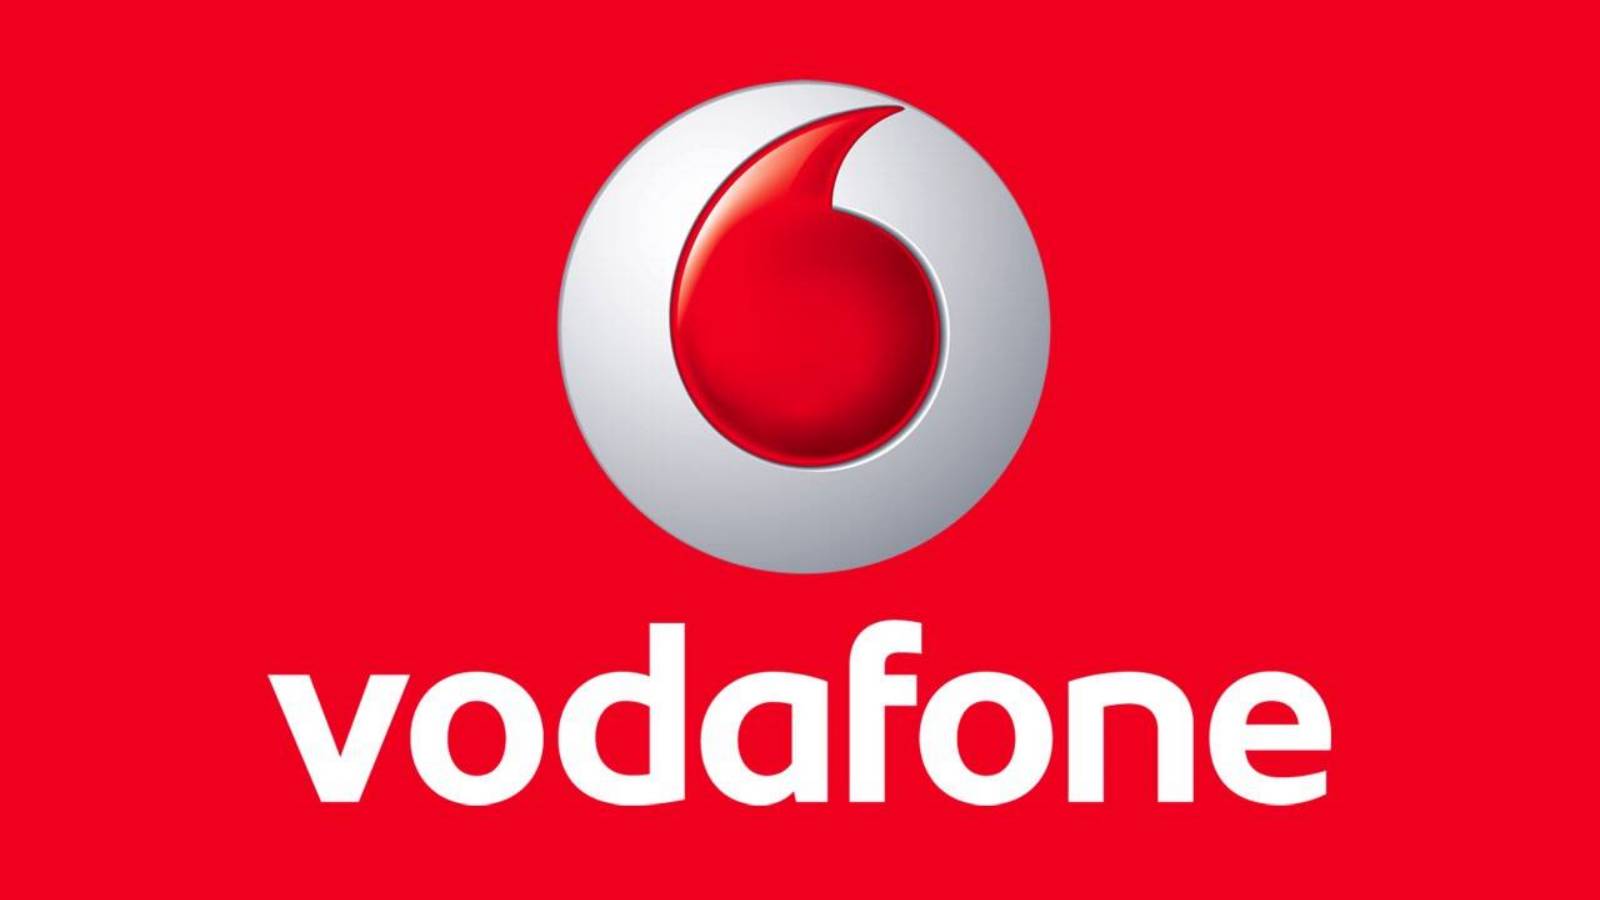 Vodafone Romanian asiakasilmoitus ilmestyy tammikuussa